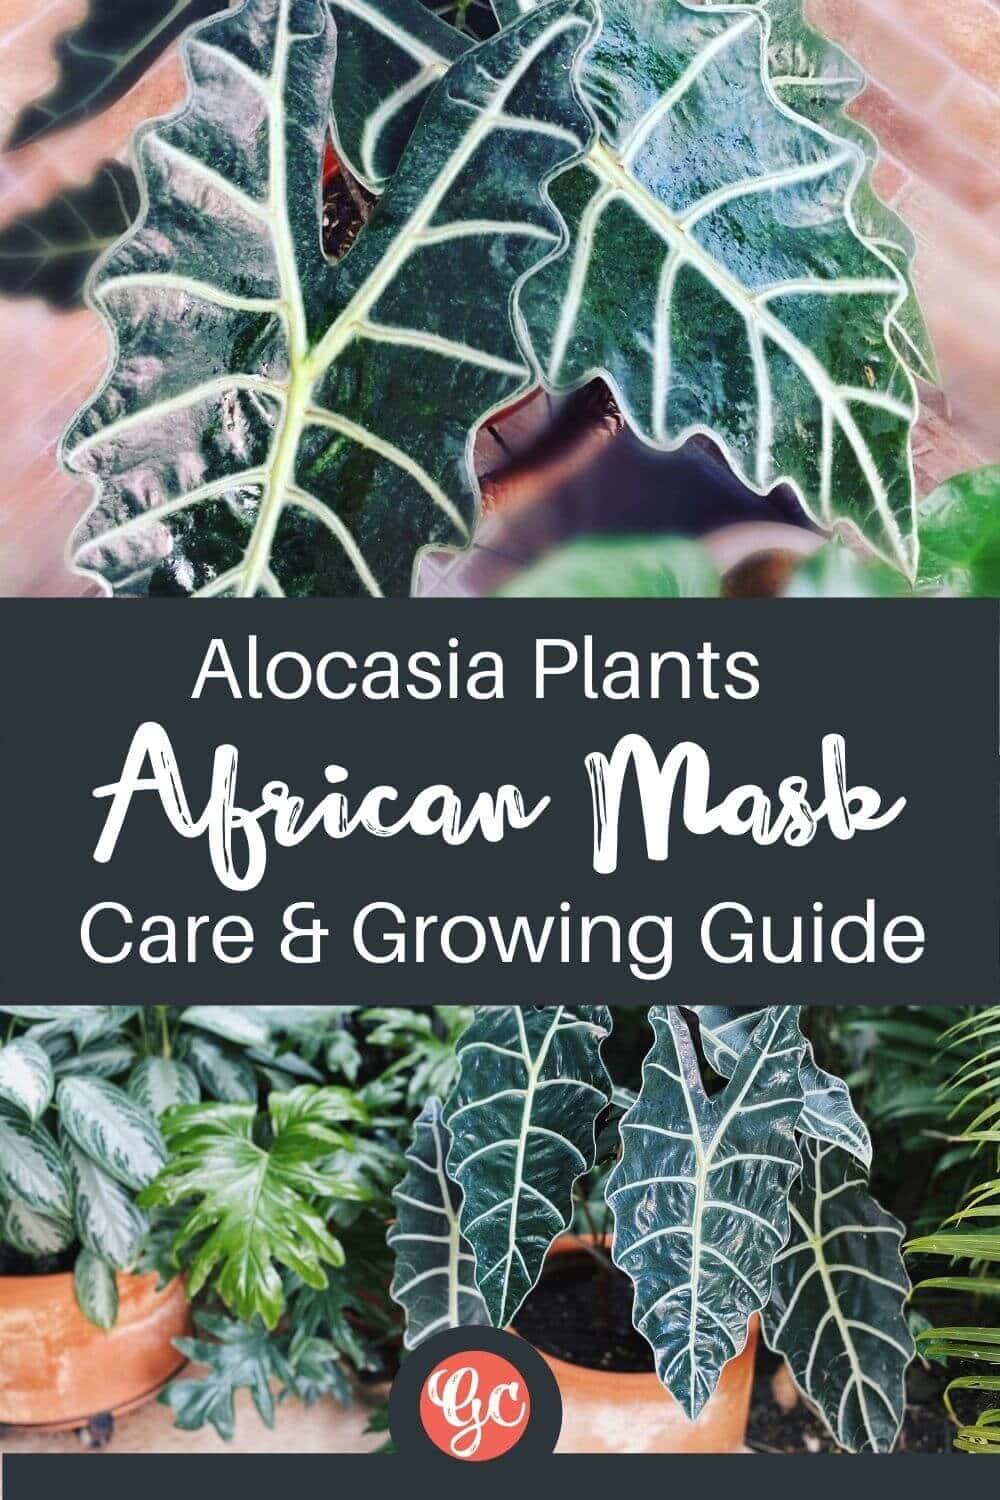  Plante Alocasia (masque africain) - Types, soins et conseils de culture